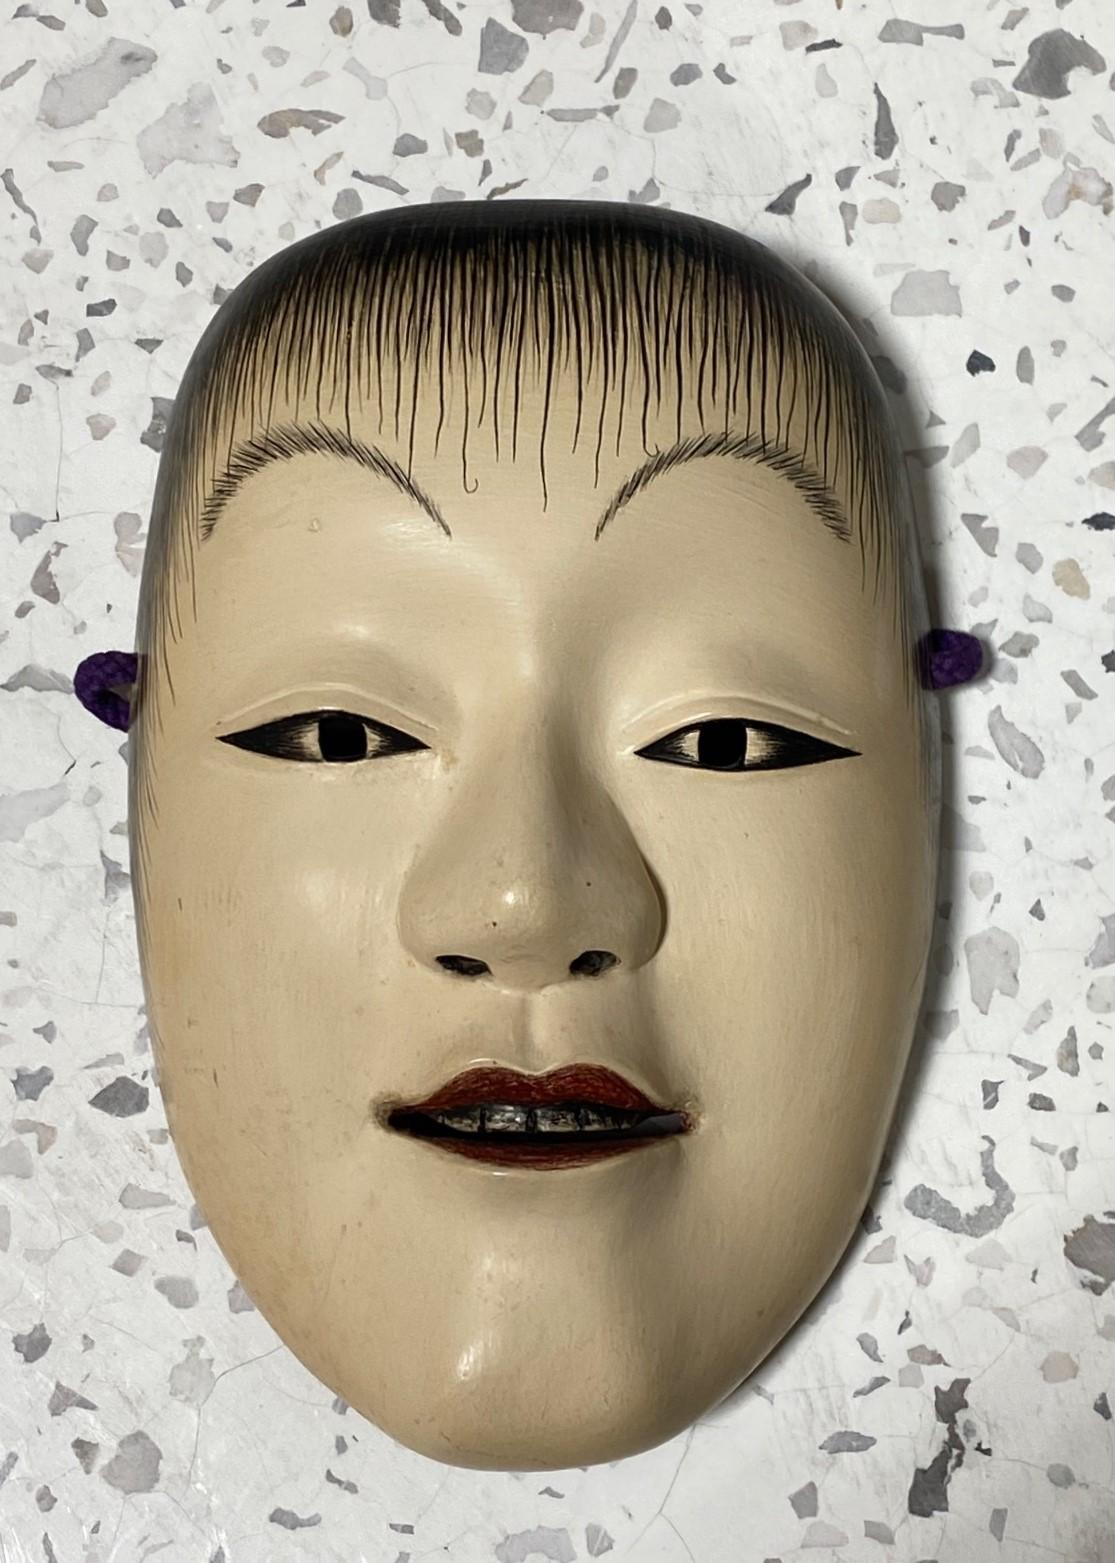 Un masque magnifique, merveilleusement réalisé, séduisant, conçu pour le théâtre nô japonais.

Le masque est fabriqué et sculpté à la main en bois naturel et est signé par le fabricant. 

Ce masque est celui du personnage immortel Doji qui symbolise